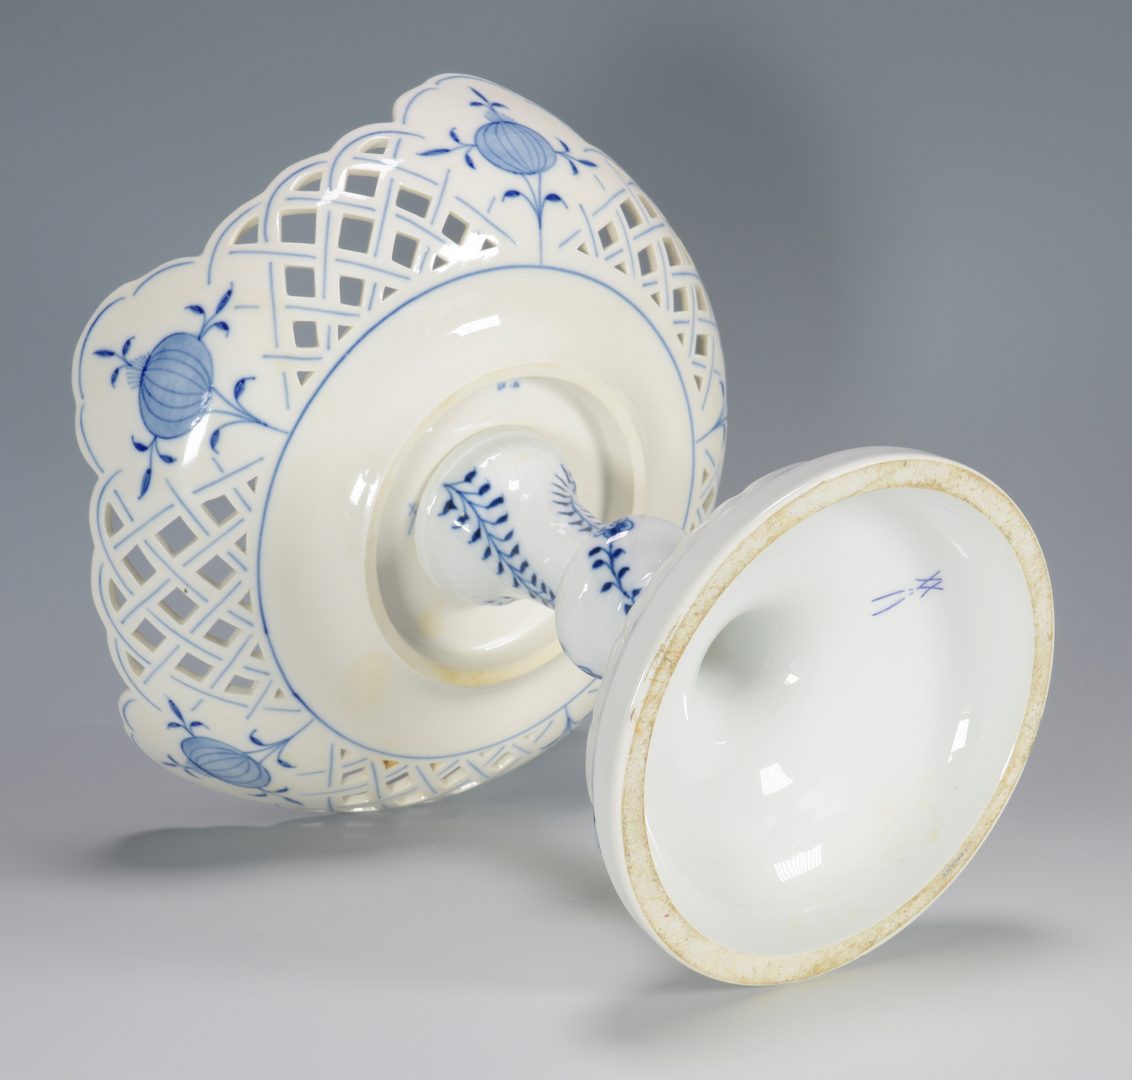 Lot 686: Meissen Blue Onion Porcelain, 93 pcs.